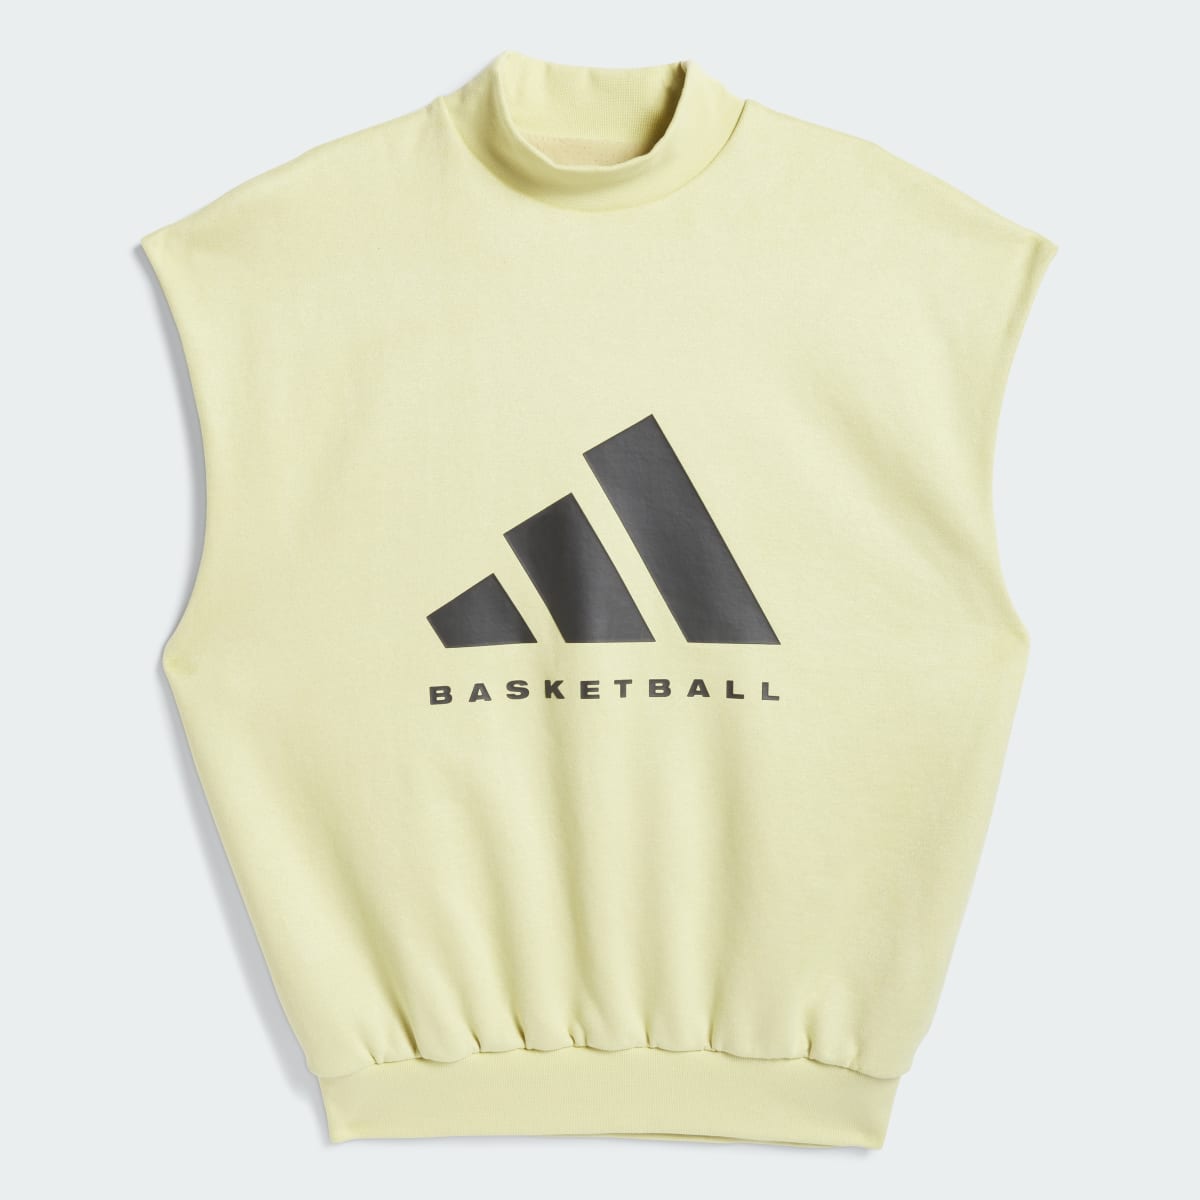 Adidas Bluza Basketball Sueded Sleeveless. 4